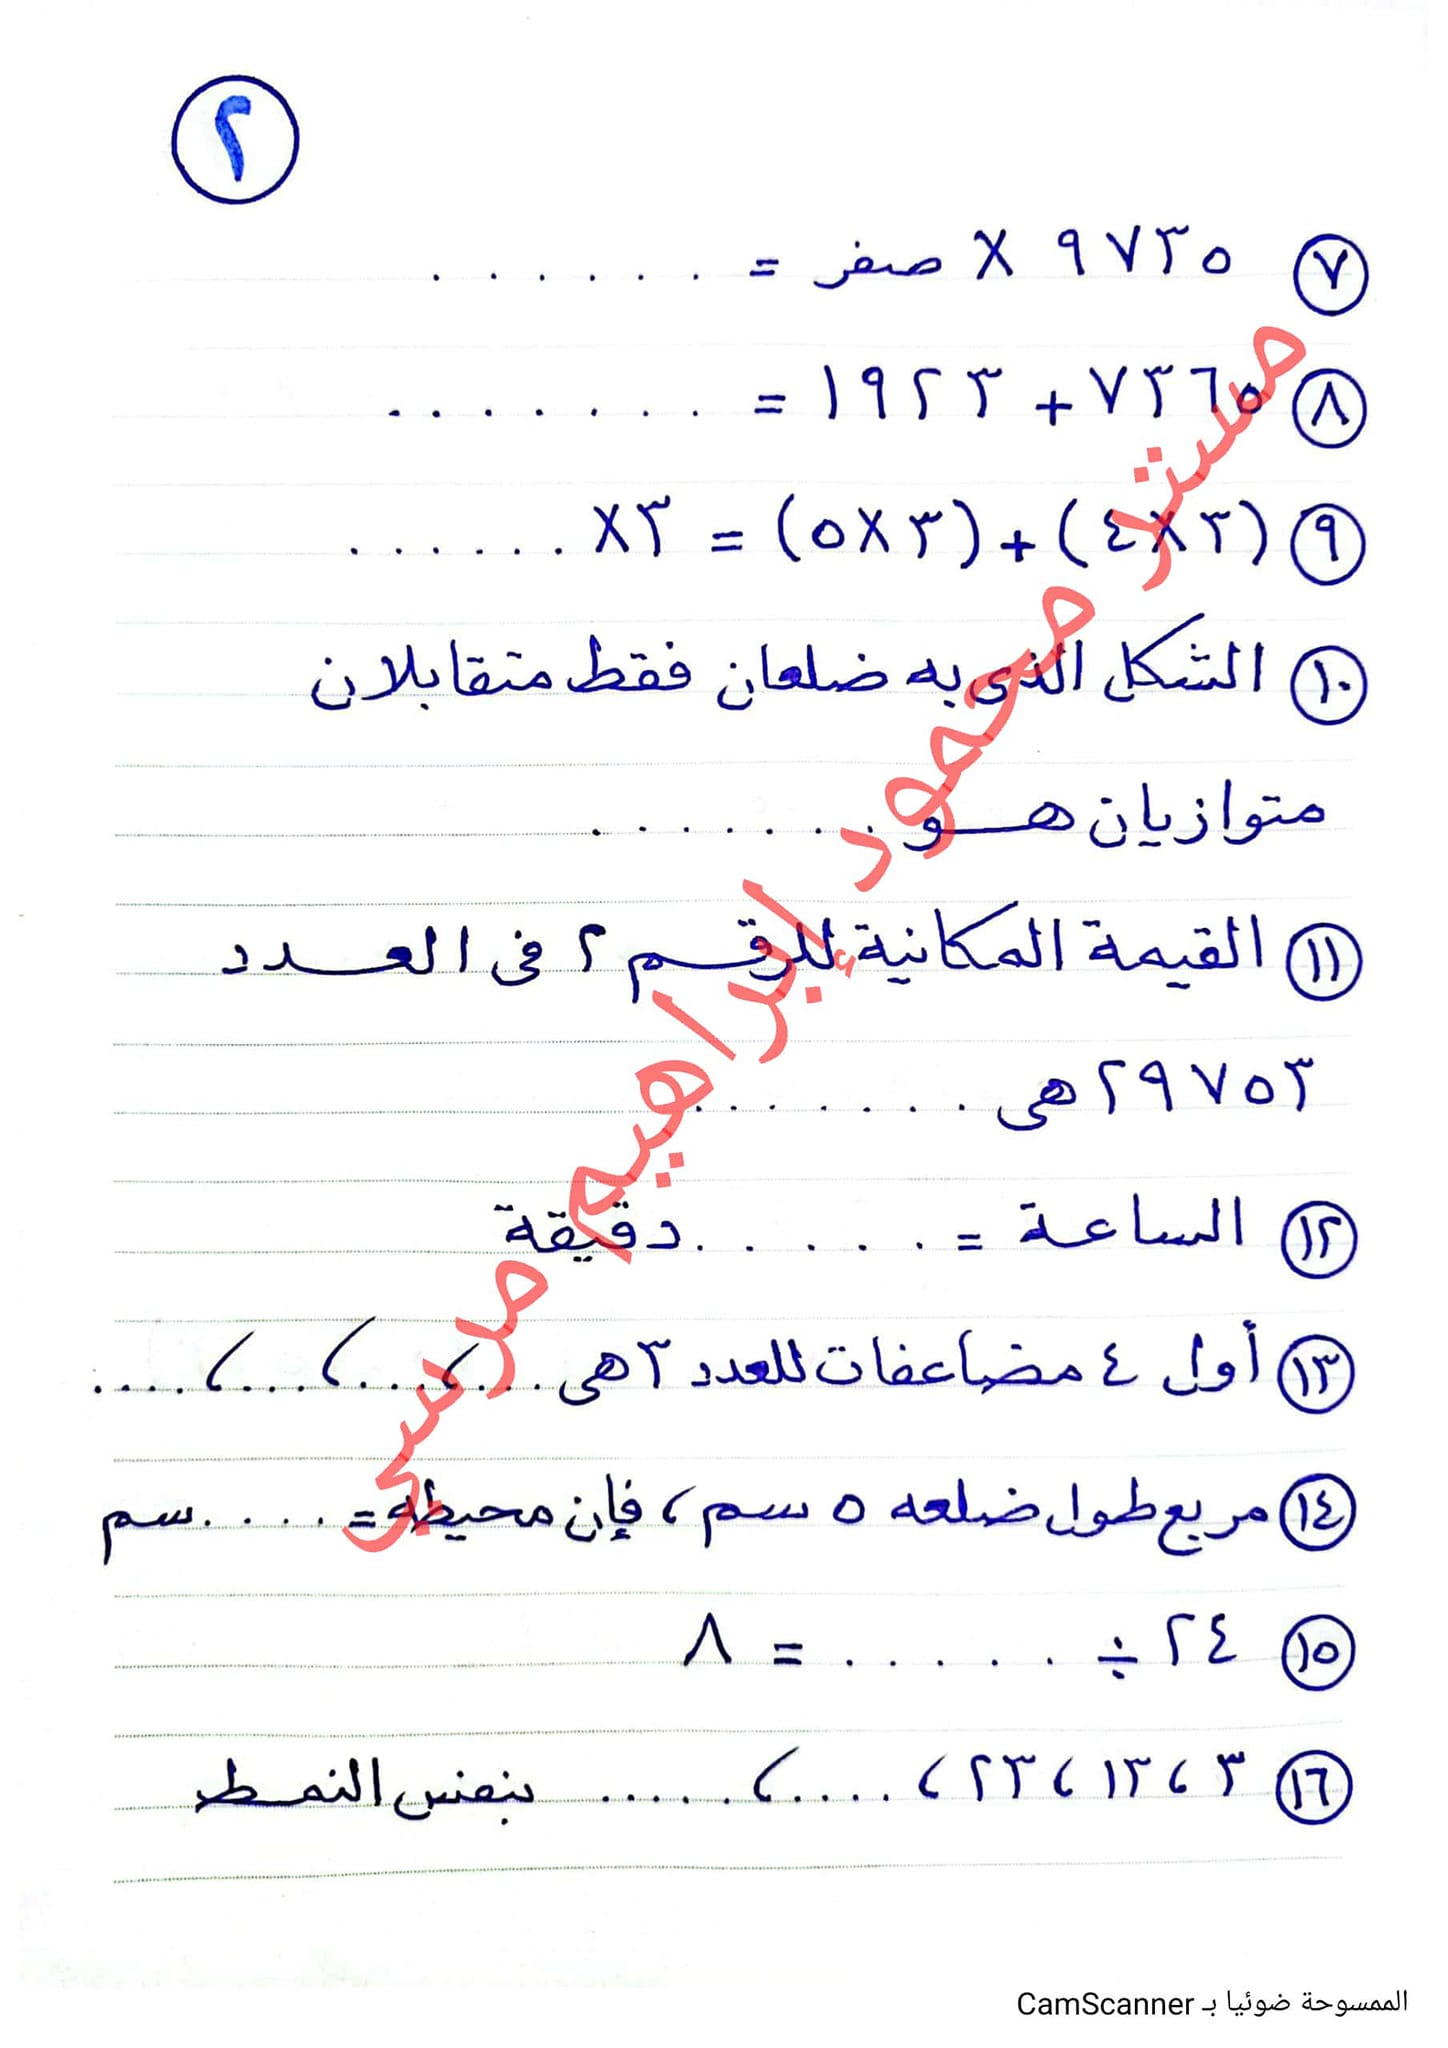 مدرس اول المراجعة النهائية في الرياضيات للصف الثالث الابتدائي على منهج الفصل الدراسي الاول أ/ محمود مرسى	